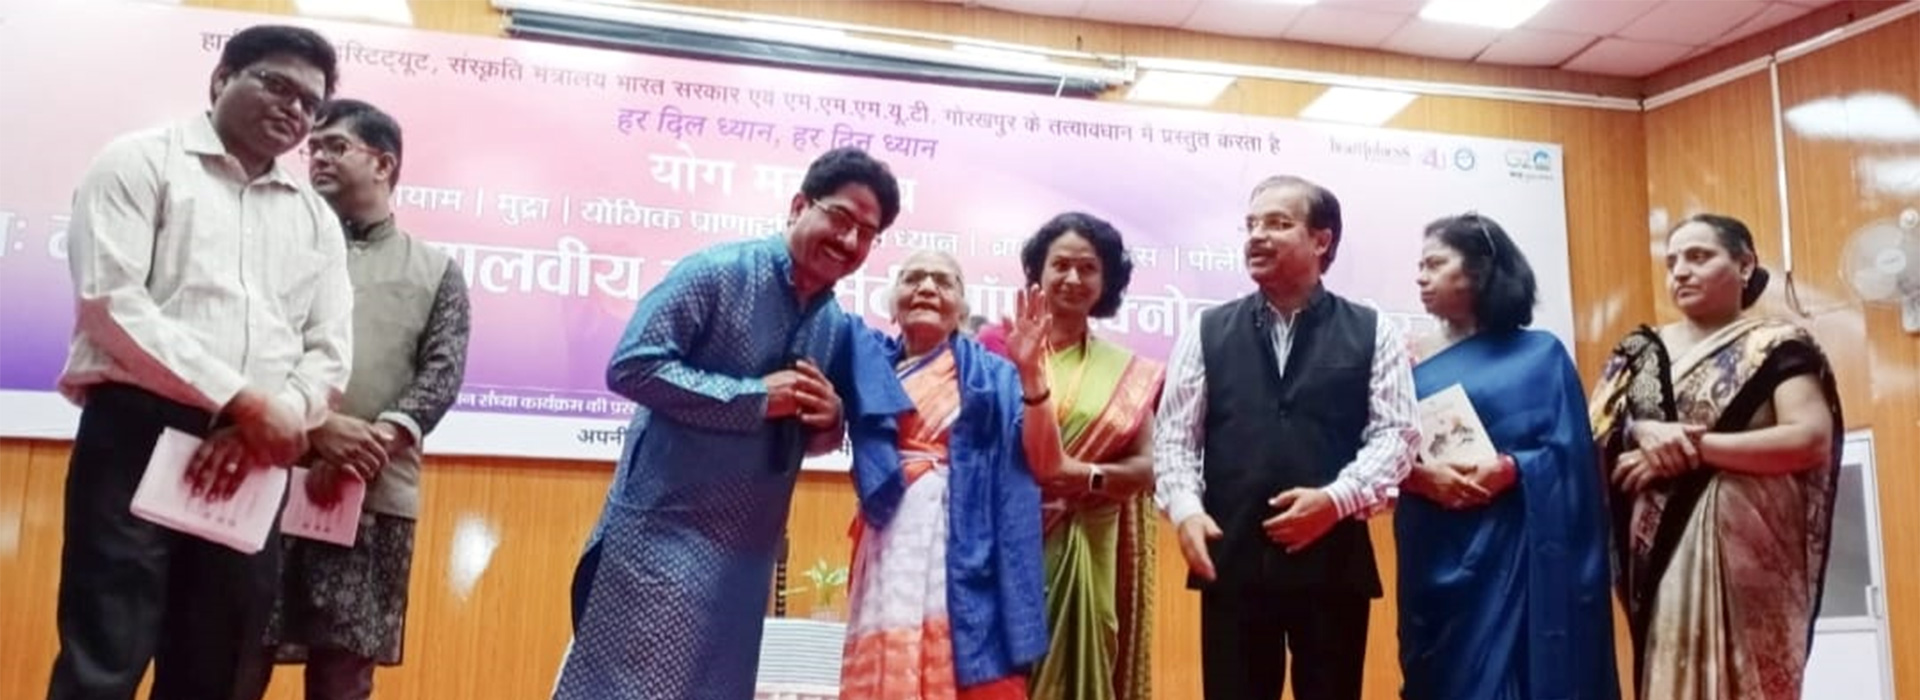 Rakesh Upadhyay Bhojpuri Lokgayak, Rakesh Upadhyay Bhojpuri Singer in Gorakhpur, Bhojpuri Lokgayak, Gorakhpur Bhojpuri Lokgayak, Rakesh Upadhyay Bhojpuri Geet, Gorakhpur Mahotsav Singer 